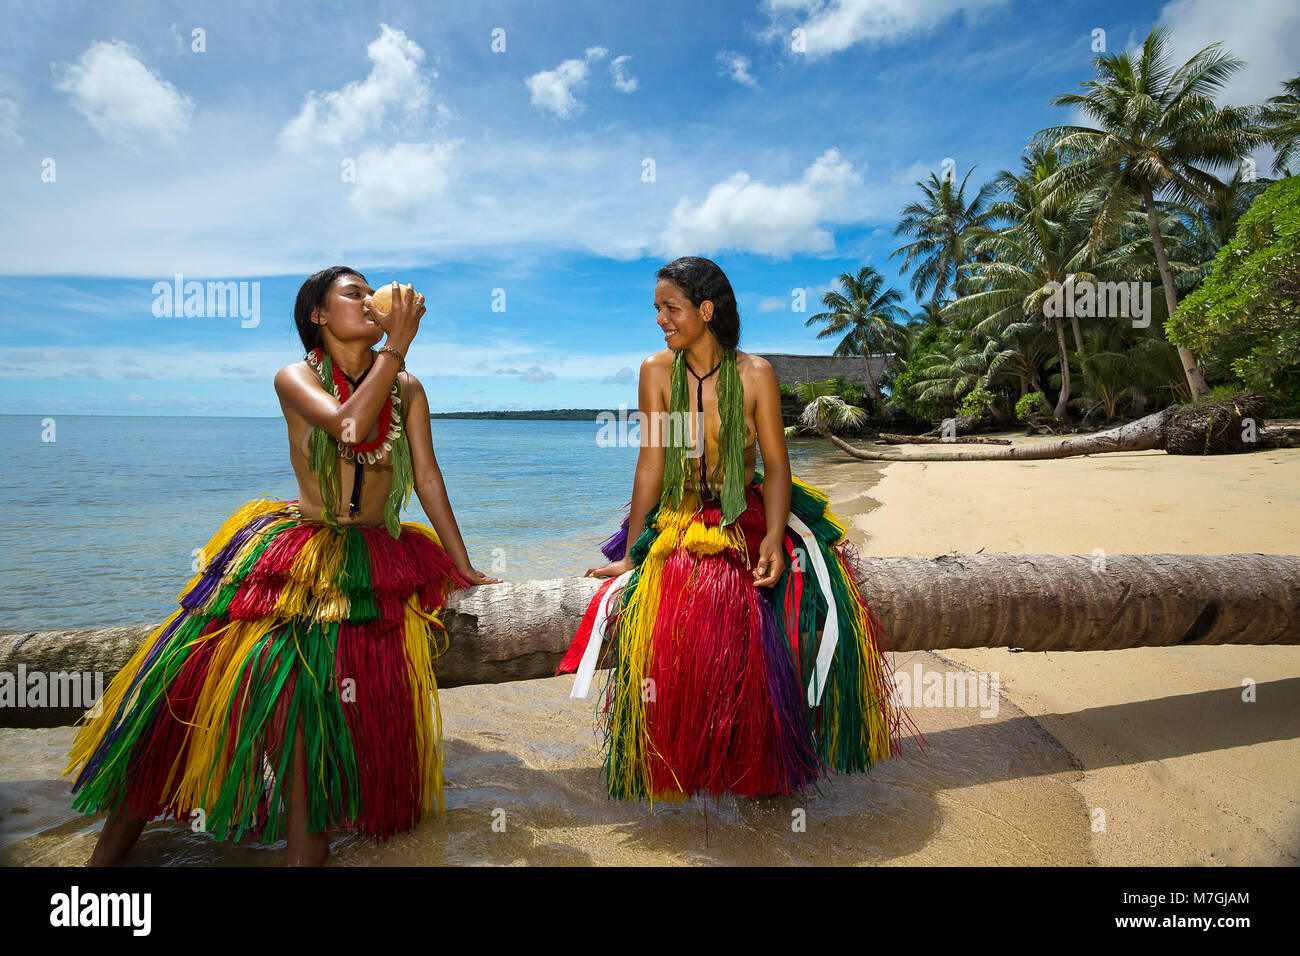 Diese zwei jungen Mädchen (MR) sind im traditionellen Outfits für kulturelle Zeremonien auf der Insel Yap in Mikronesien. Stockfoto